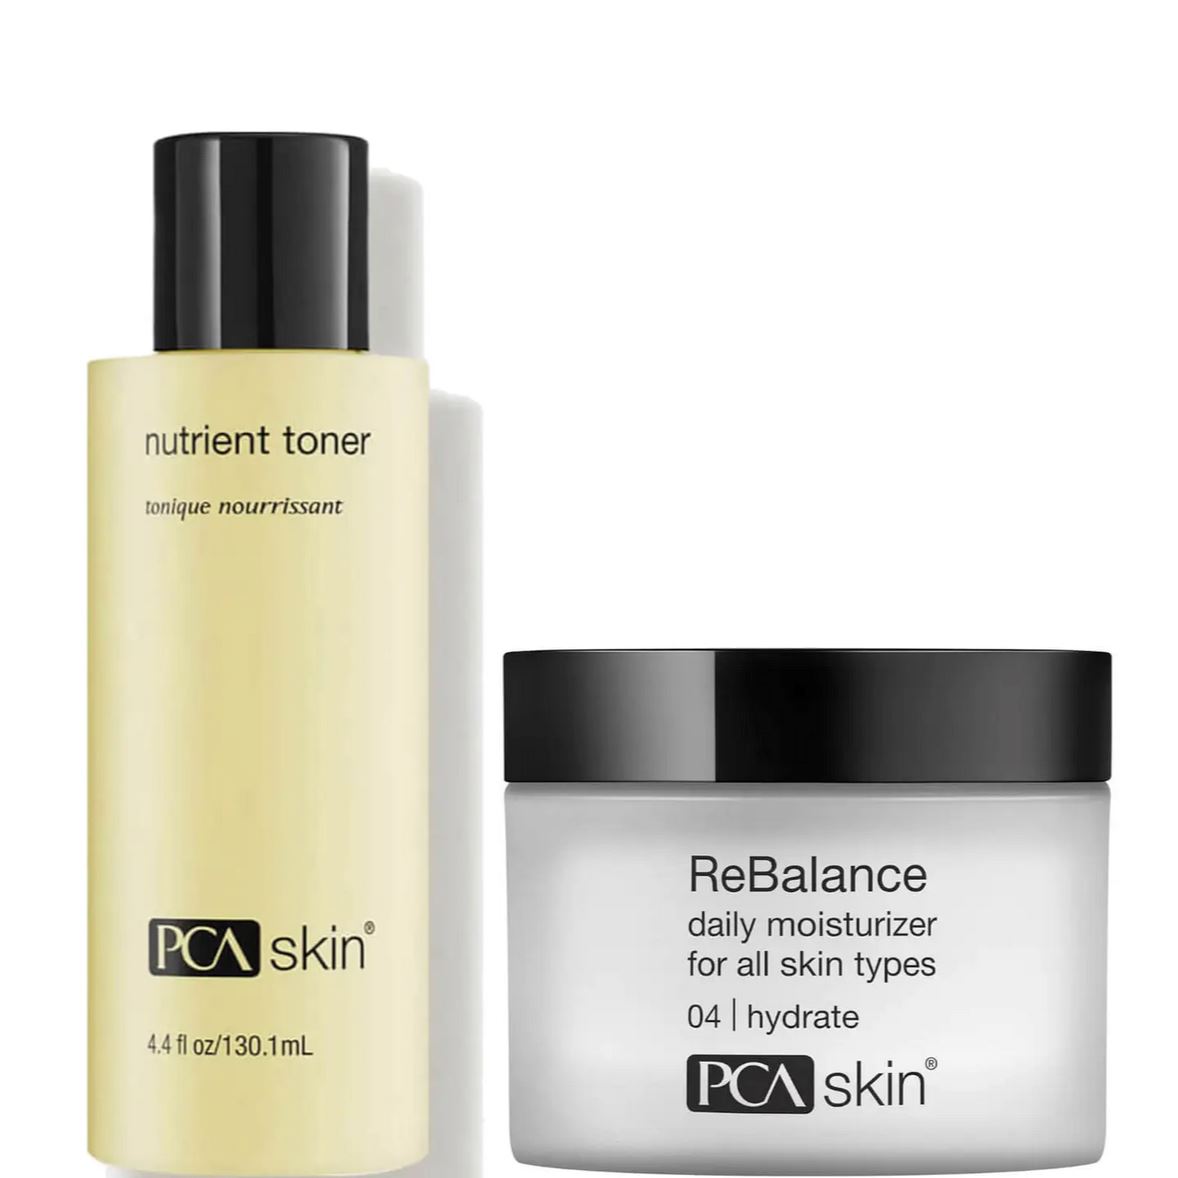 PCA Skin Sensitive Skin Duo (Nutrient Toner + Rebalance) $103 Value Anti-Aging Skin Care Kits PCA Skin Shop at Exclusive Beauty Club